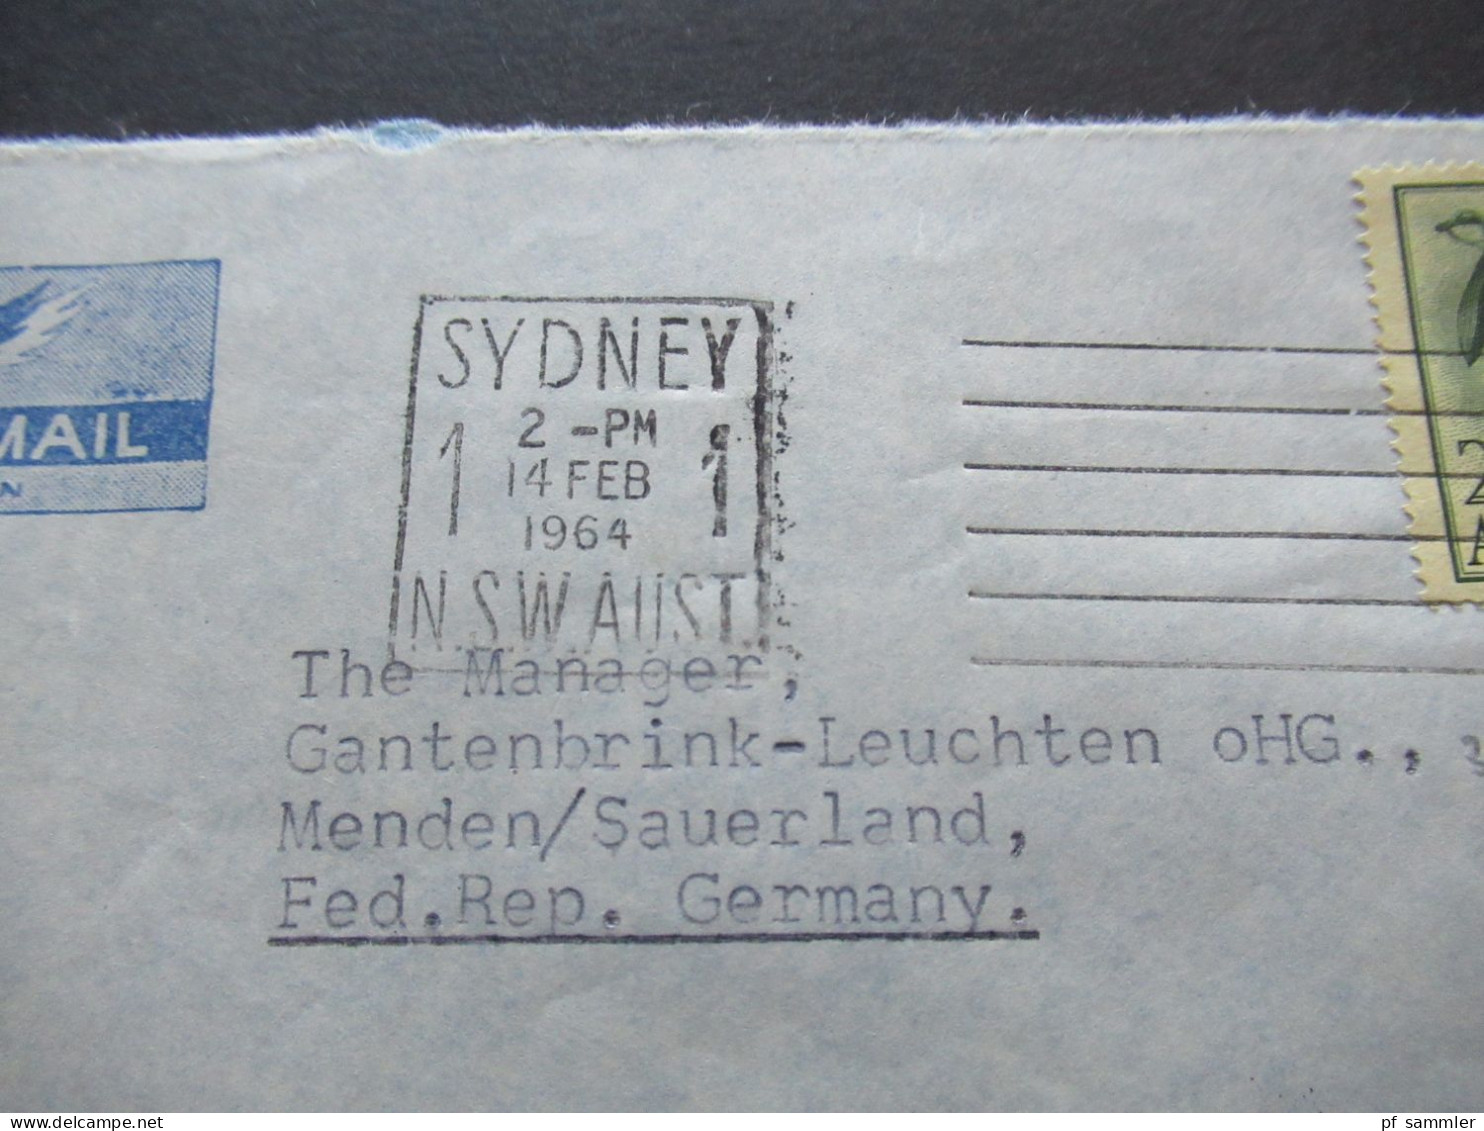 Australien 1964 By Air Mail Sydney - Menden Sauerland Briefmarke Wattle 2/3 - Covers & Documents